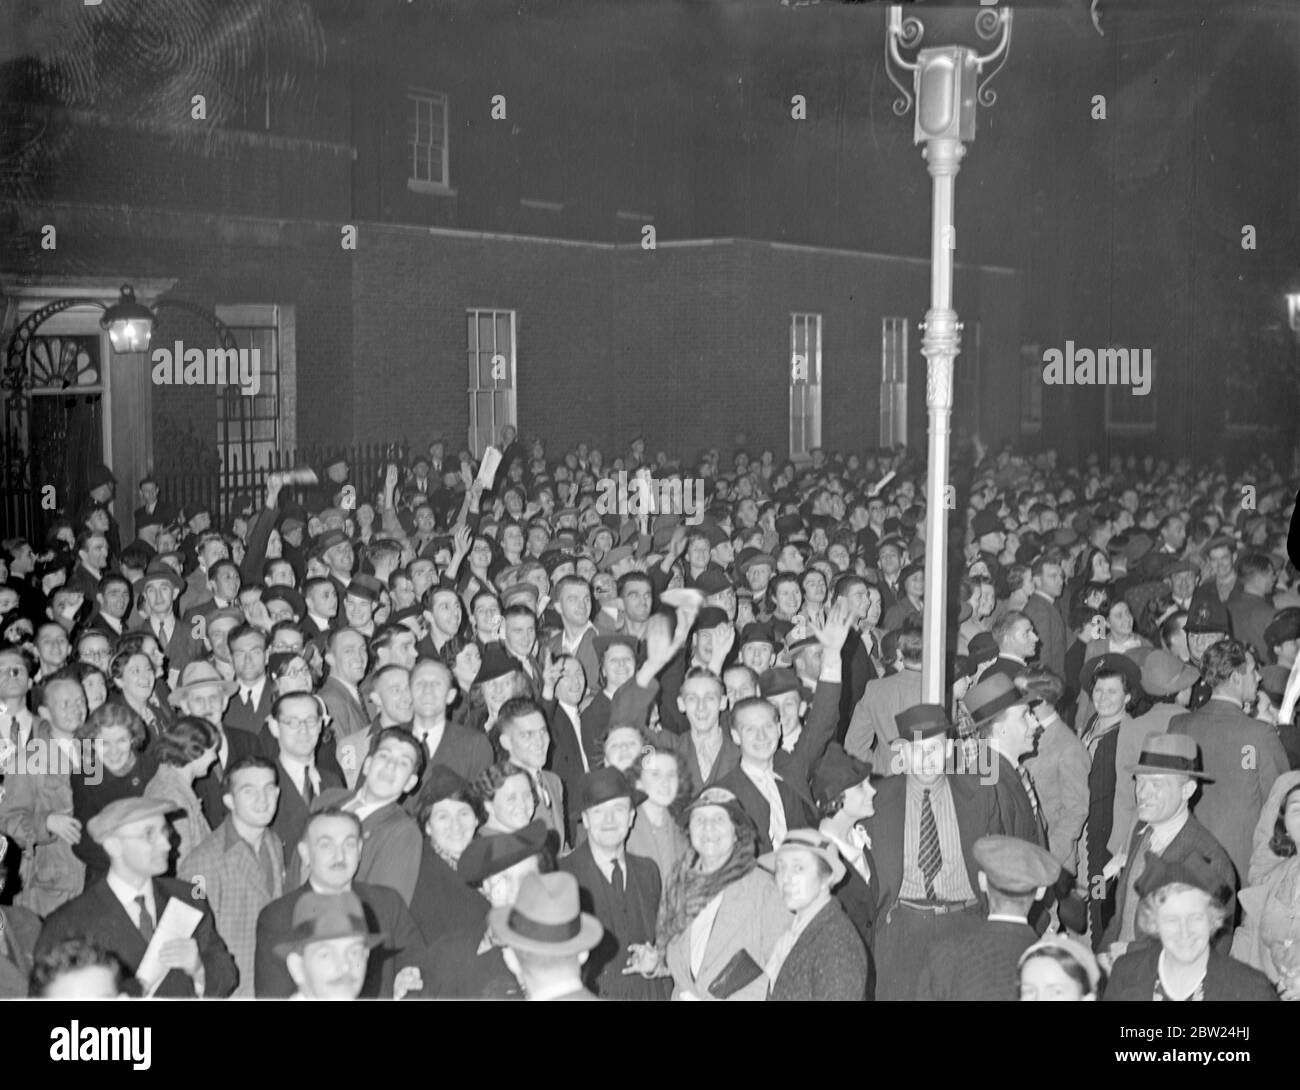 Große Menschenmengen füllten Downing Street von Seite zu Seite, während die Menschen auf Nachrichten warteten, während Hitler seine Rede auf dem Nürnberger Nazi-Parteitag hielt. Fotoserien: Die nächtlichen Menschenmassen beim Einpacken der Downing Street 12. September 1938 Stockfoto